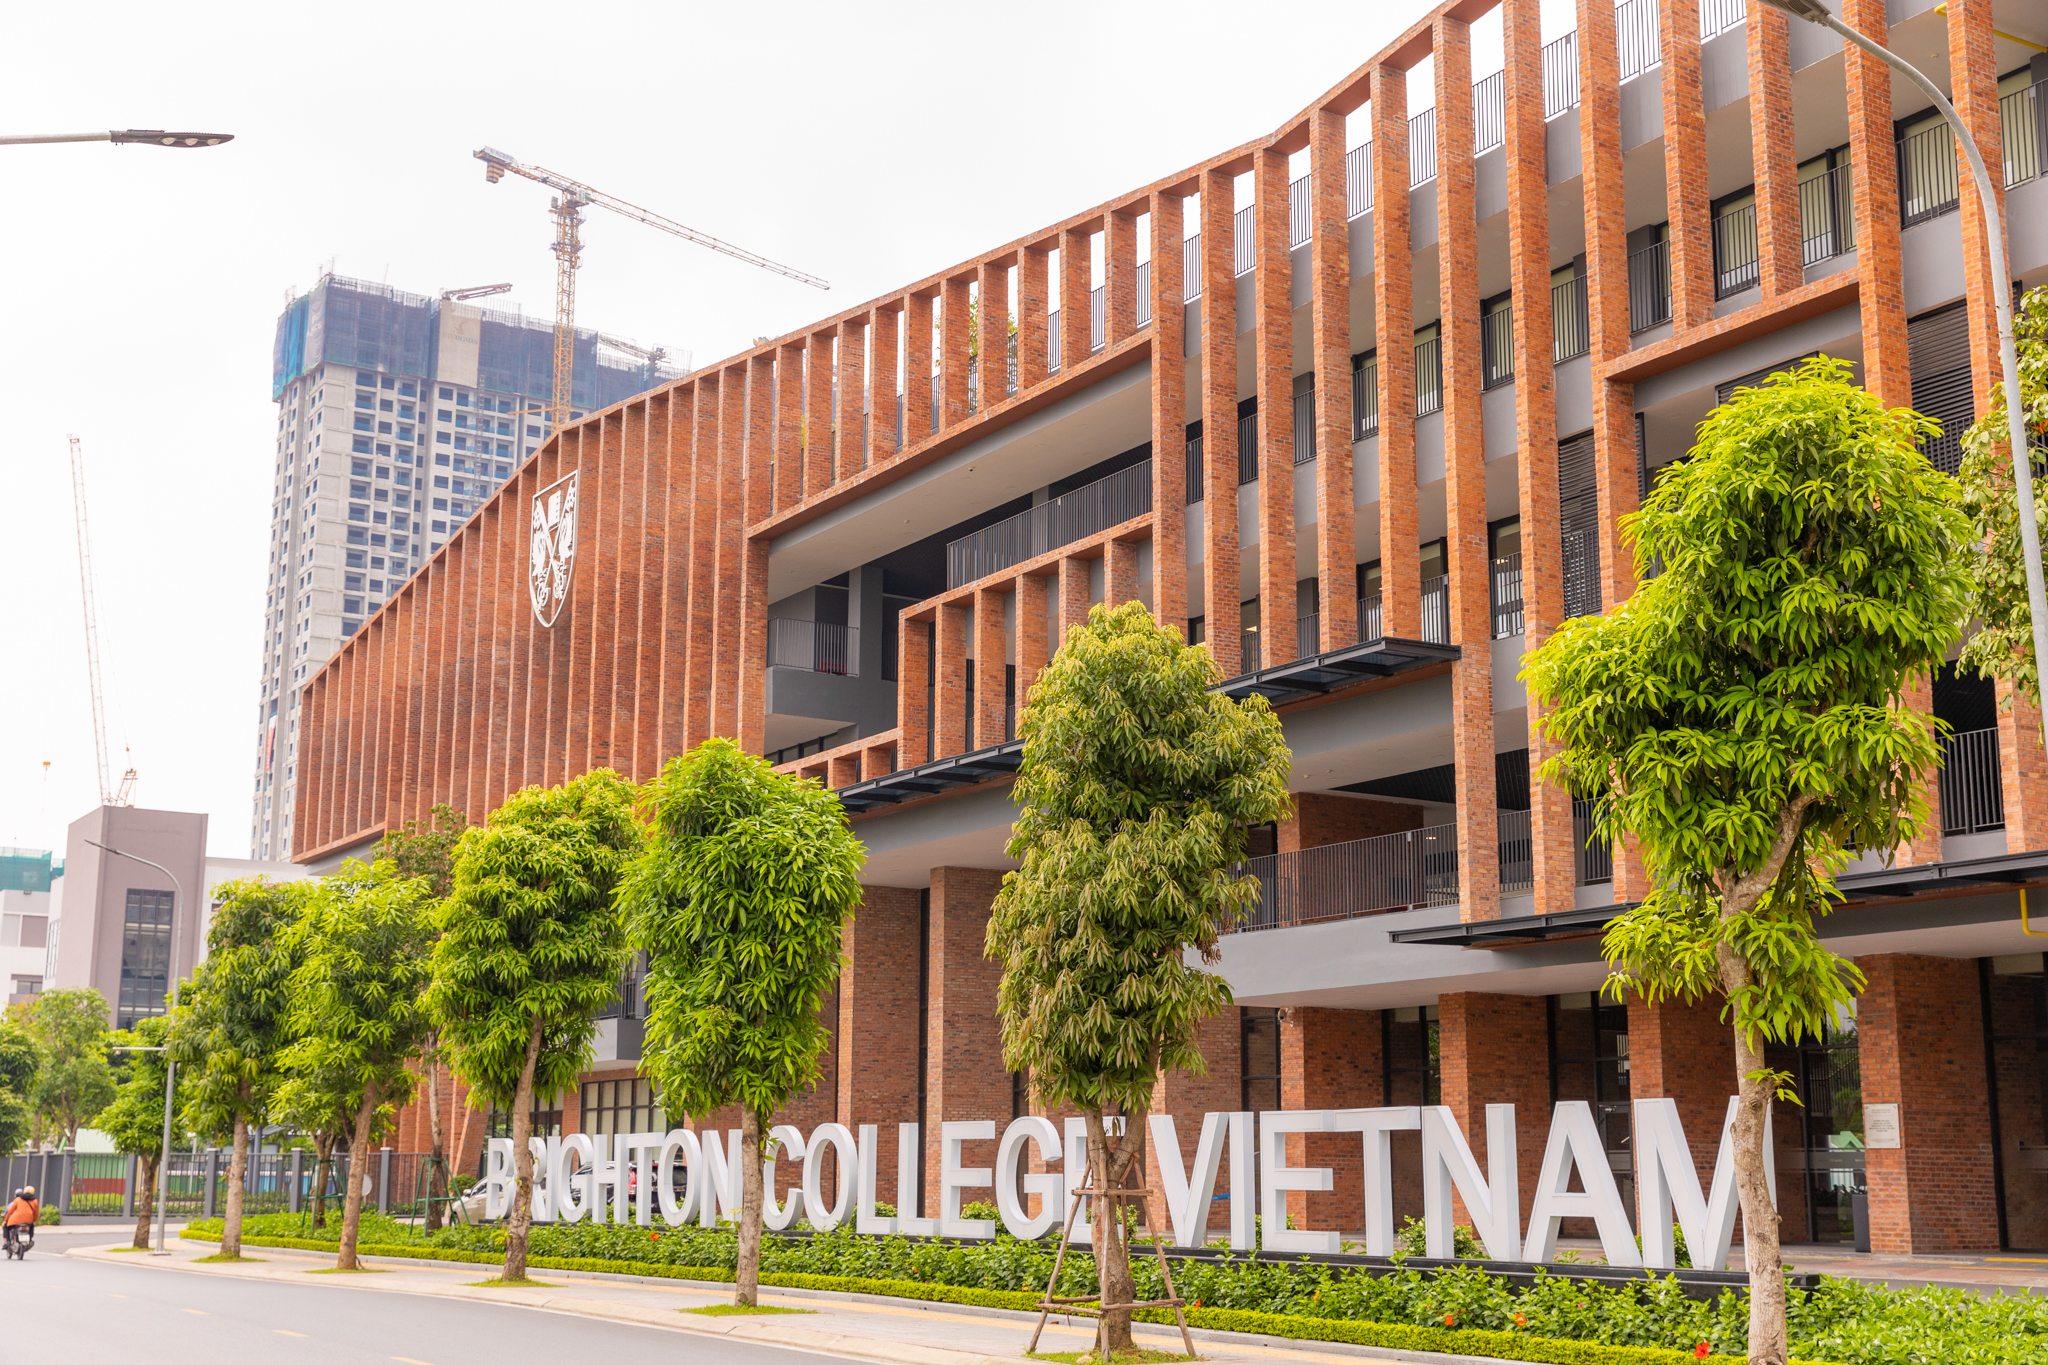 Cận cảnh ngôi trường gần 200 năm tuổi của Anh lần đầu tiên xuất hiện ở Việt Nam- Ảnh 2.